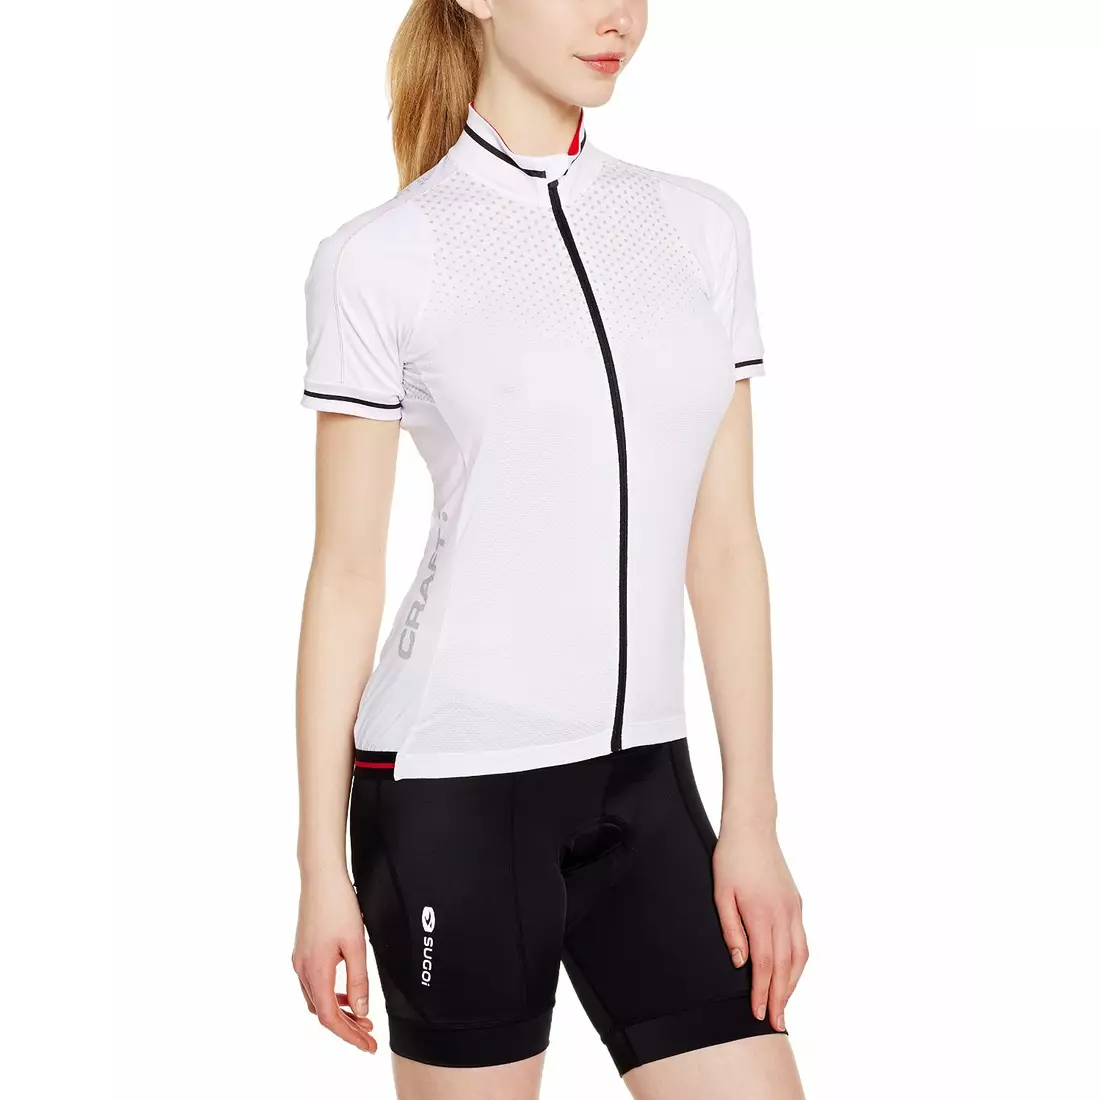 CRAFT GLOW women's cycling jersey 1903265-2900